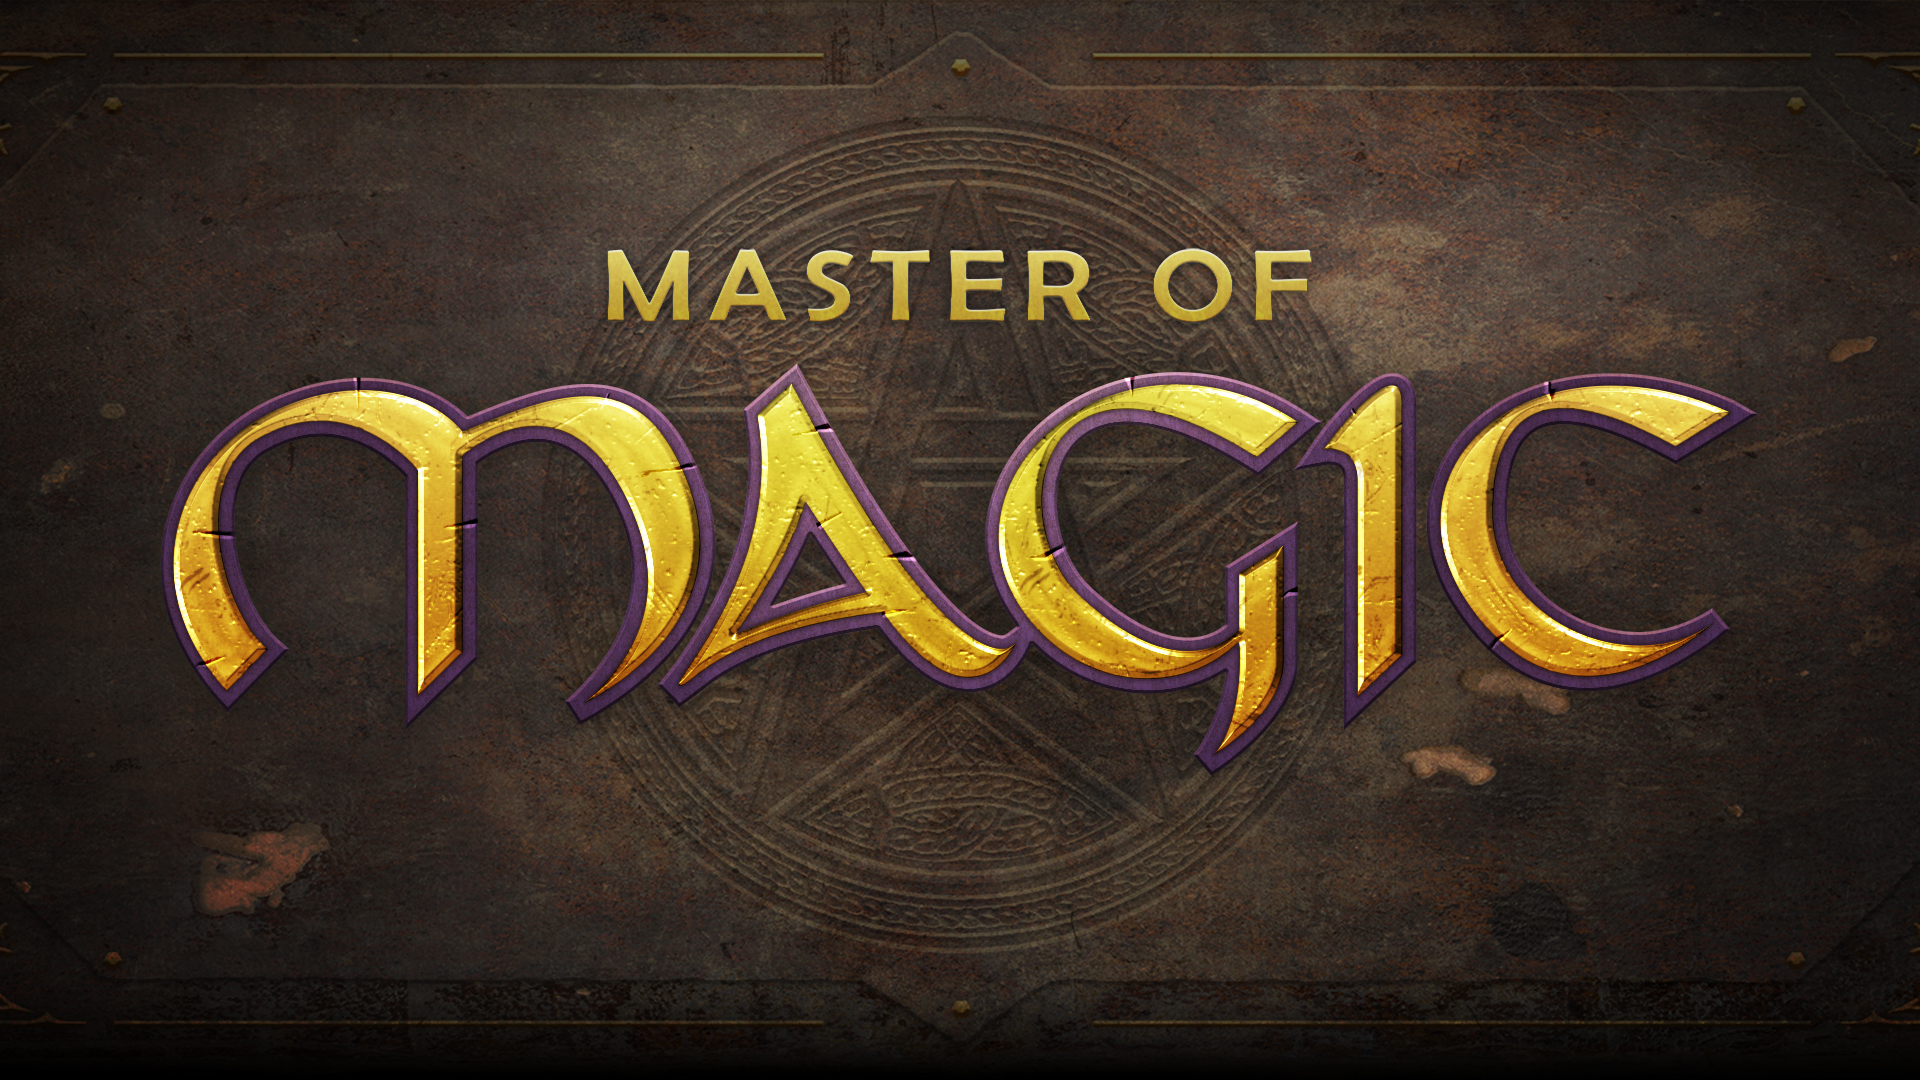 download master of magic sequel